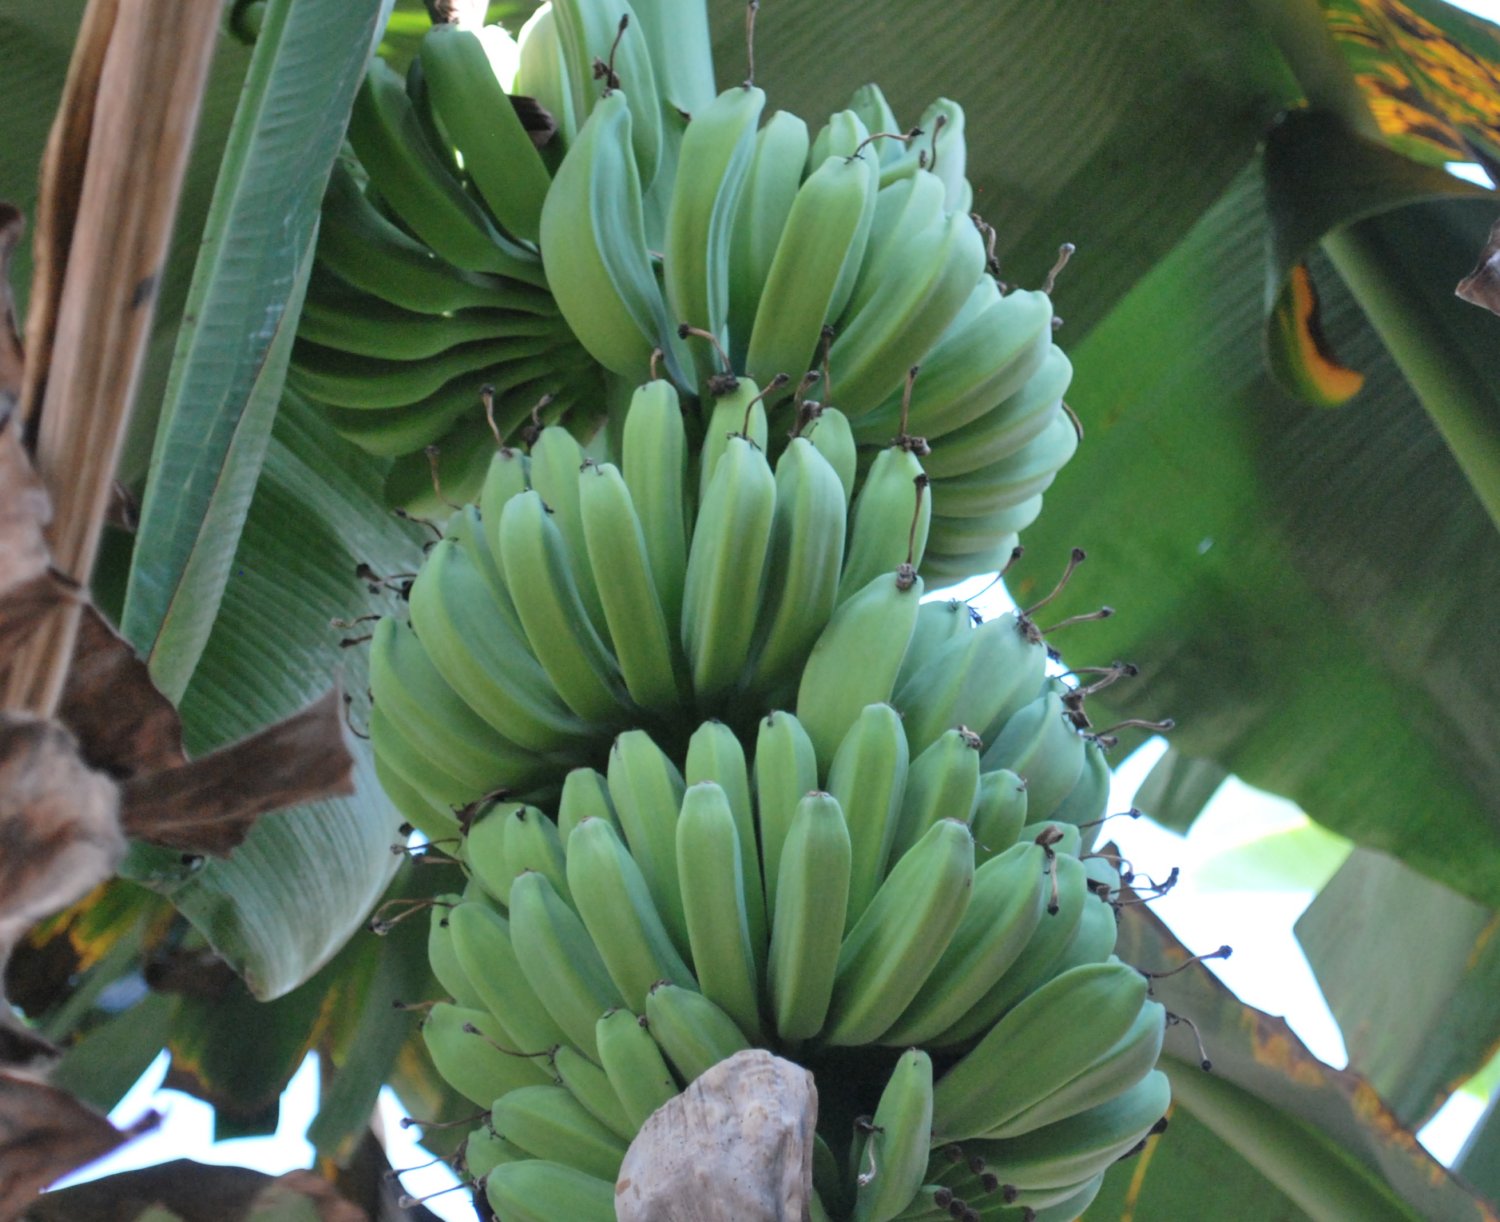 Growing bananas, Indonesia